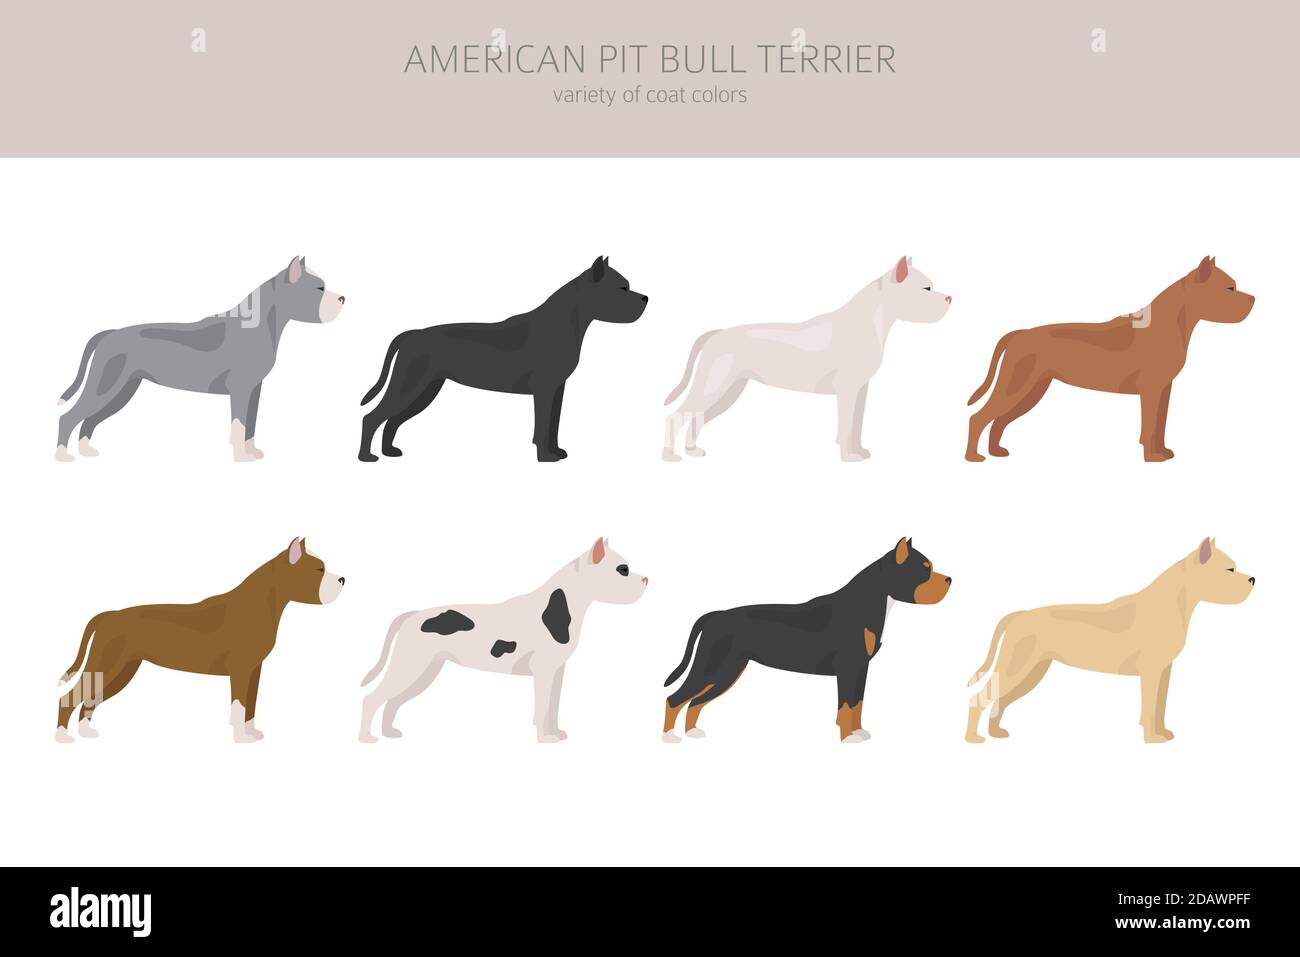 Jeu de chiens de terrier à fosse américaine. Variétés de couleurs, différentes poses. Collection d'infographies Dogs. Illustration vectorielle Illustration de Vecteur